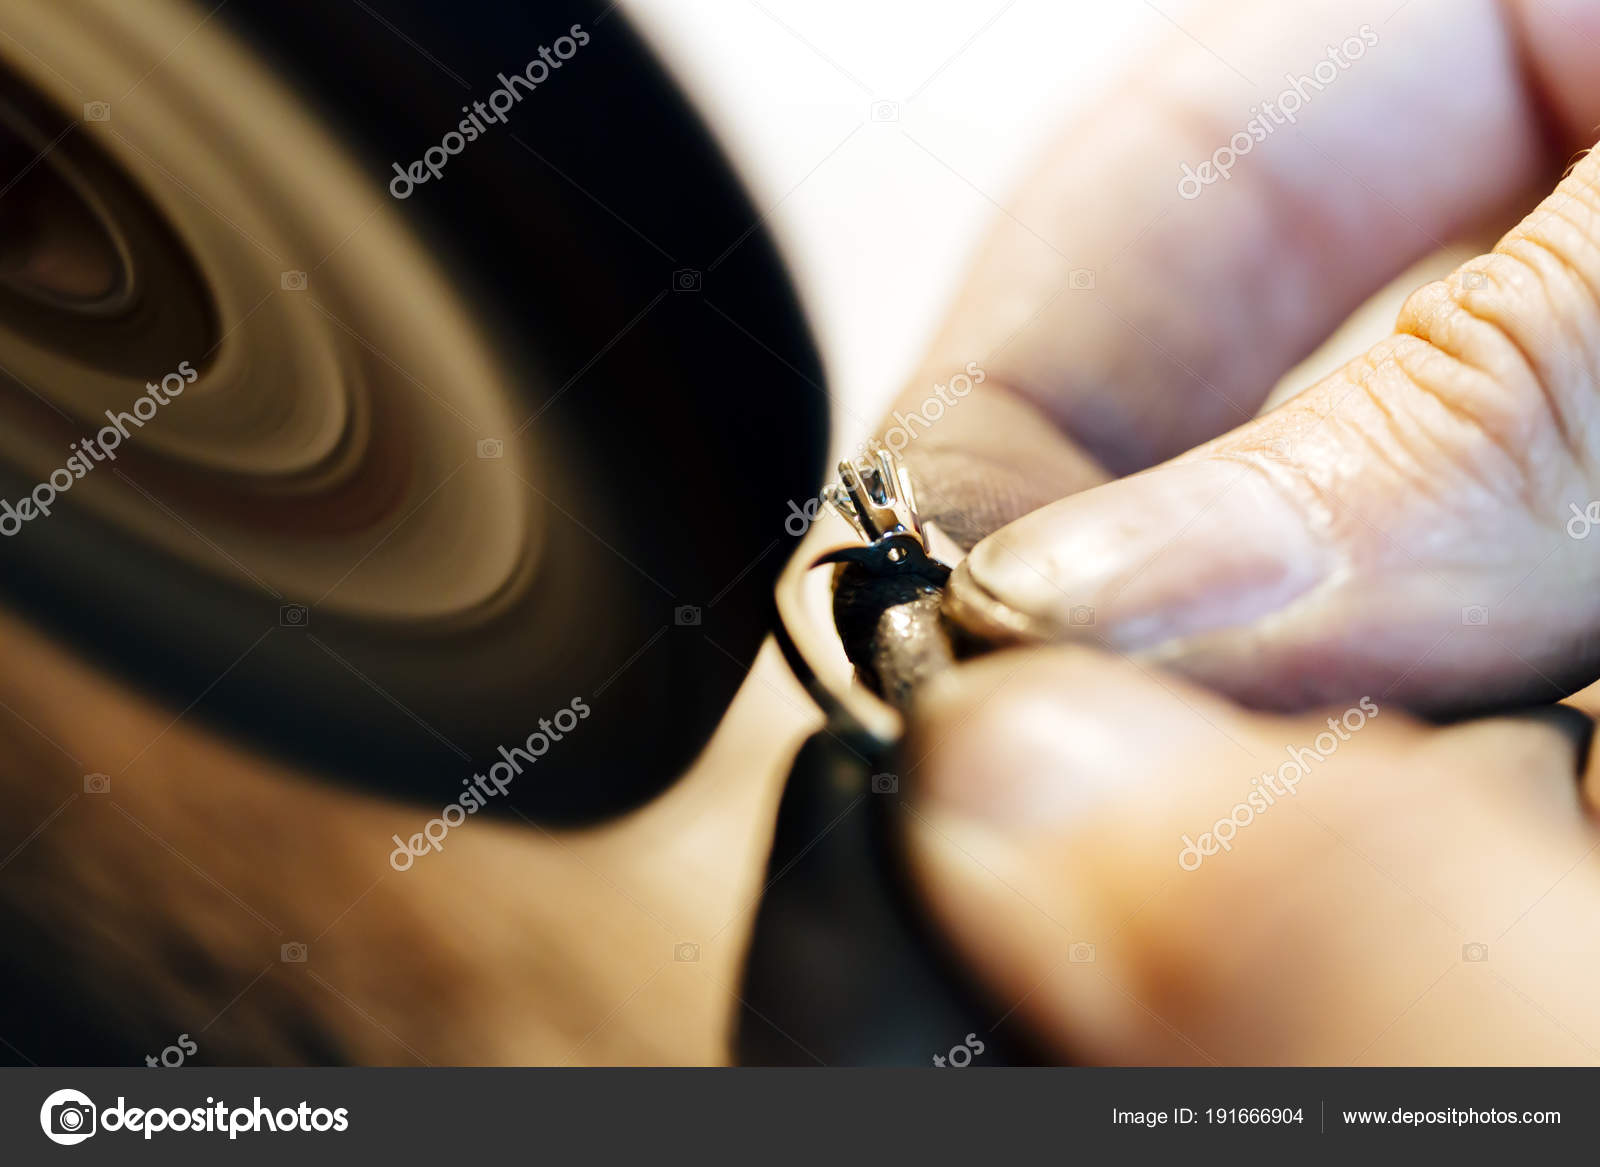 https://st3.depositphotos.com/5392356/19166/i/1600/depositphotos_191666904-stock-photo-jewelery-polishing-ring-workshop-adequate.jpg